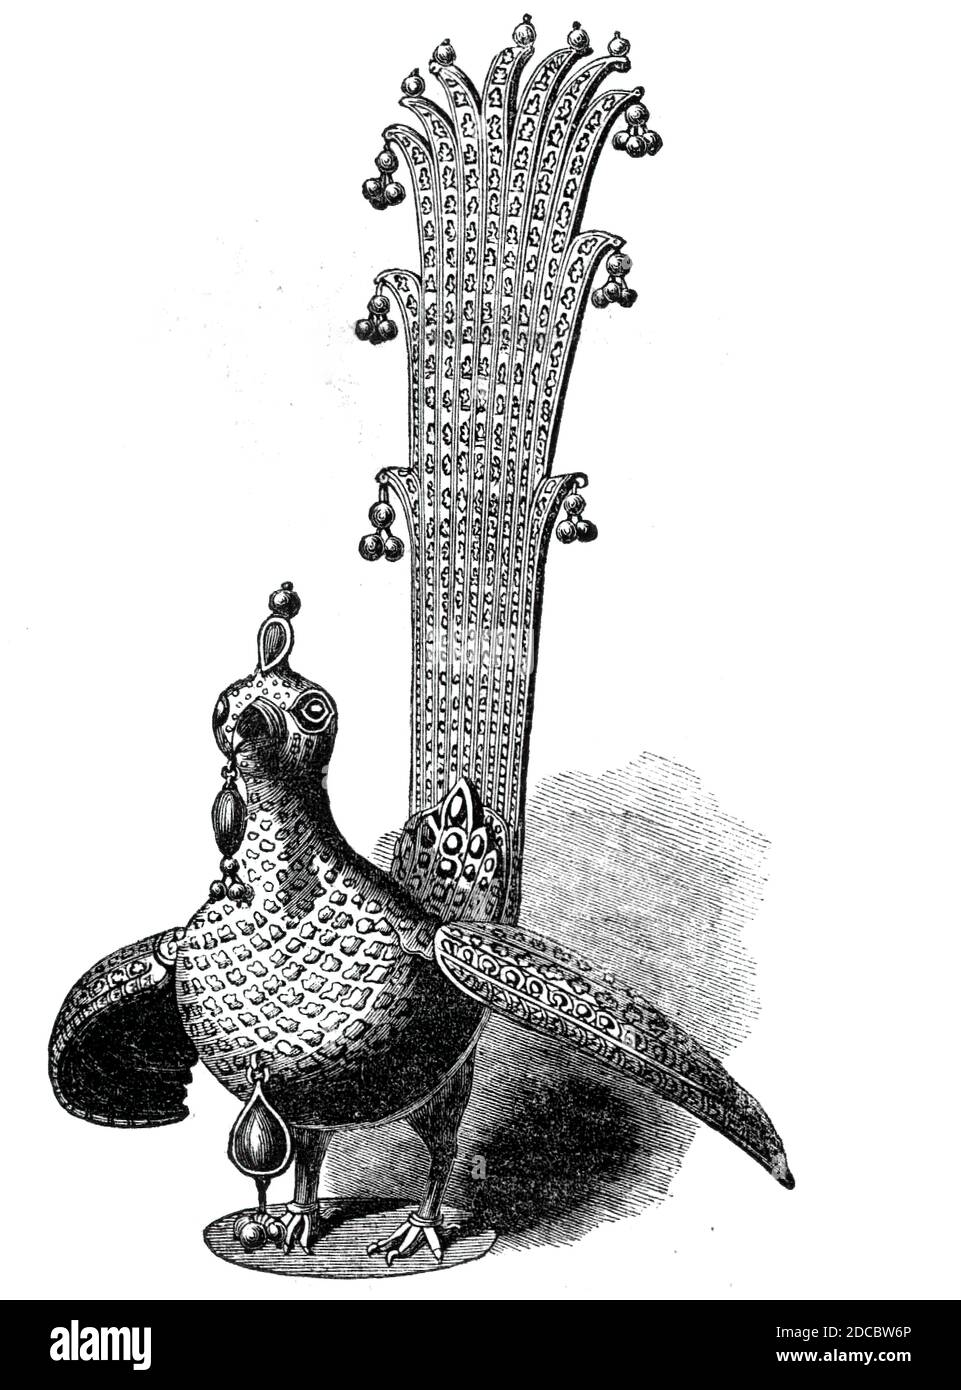 Pfau von Tippo Saib, 1844. Der 'Huma Bird', ein Ornament in Form eines Paradiesvogels aus Gold, Rubinen, Smaragden, Diamanten, Perlen, Silbervergoldung für Tipu, Sultan von Mysore. Nach Tipus Niederlage und Tod im Jahr 1799 wurden seine Schatzkammer und Bibliothek in Seringapatam von britischen Streitkräften durchsucht. Der Huma Bird wurde 1799 von Marquess Wellesley für die Direktoren der East India Company "erworben". Es wurde dann George III. Vorgestellt Aus "Illustrated London News", 1844, Vol Stockfoto